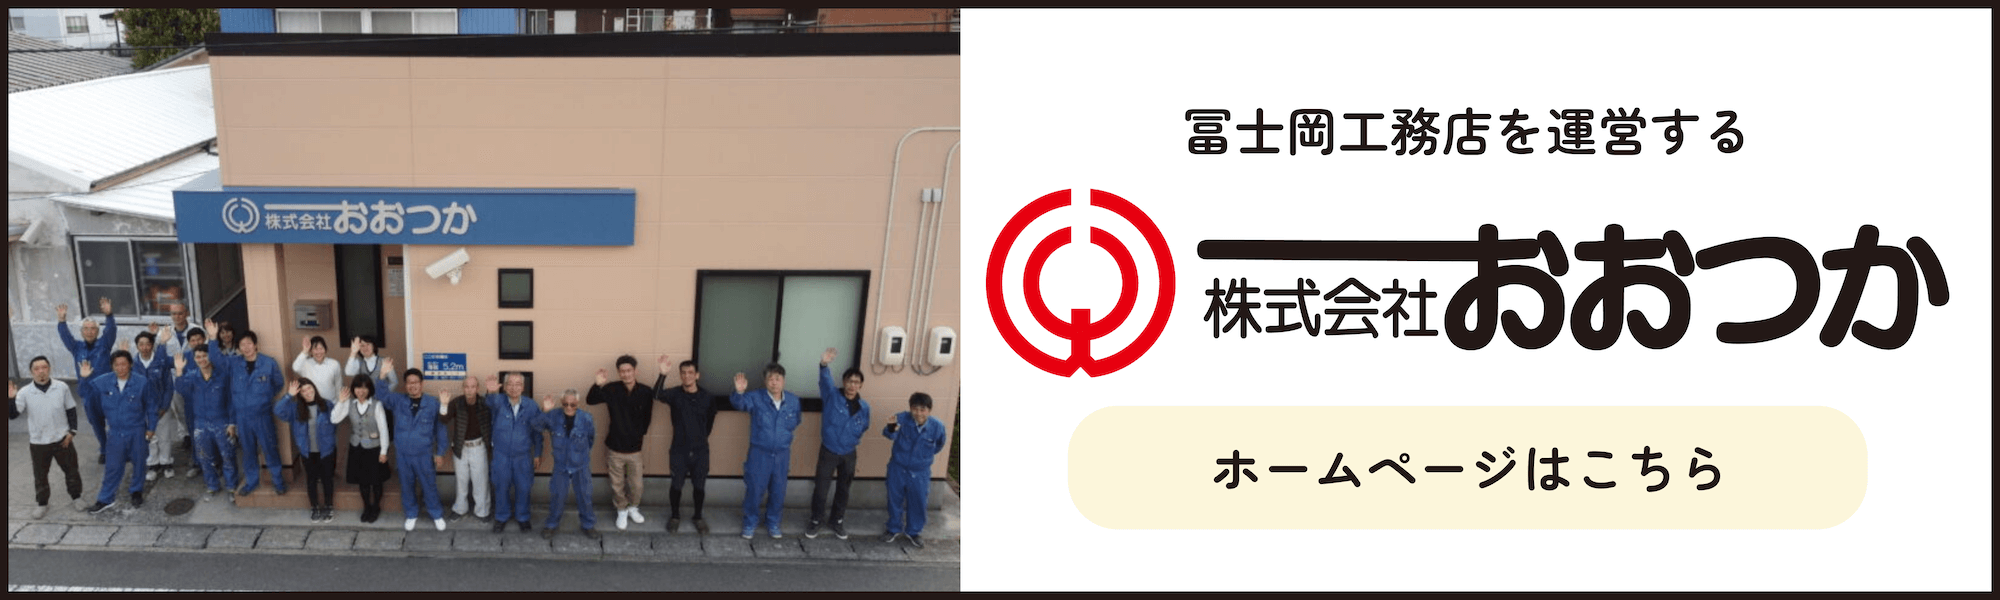 冨士岡工務店を運営する株式会社おおつかのホームページはこちら